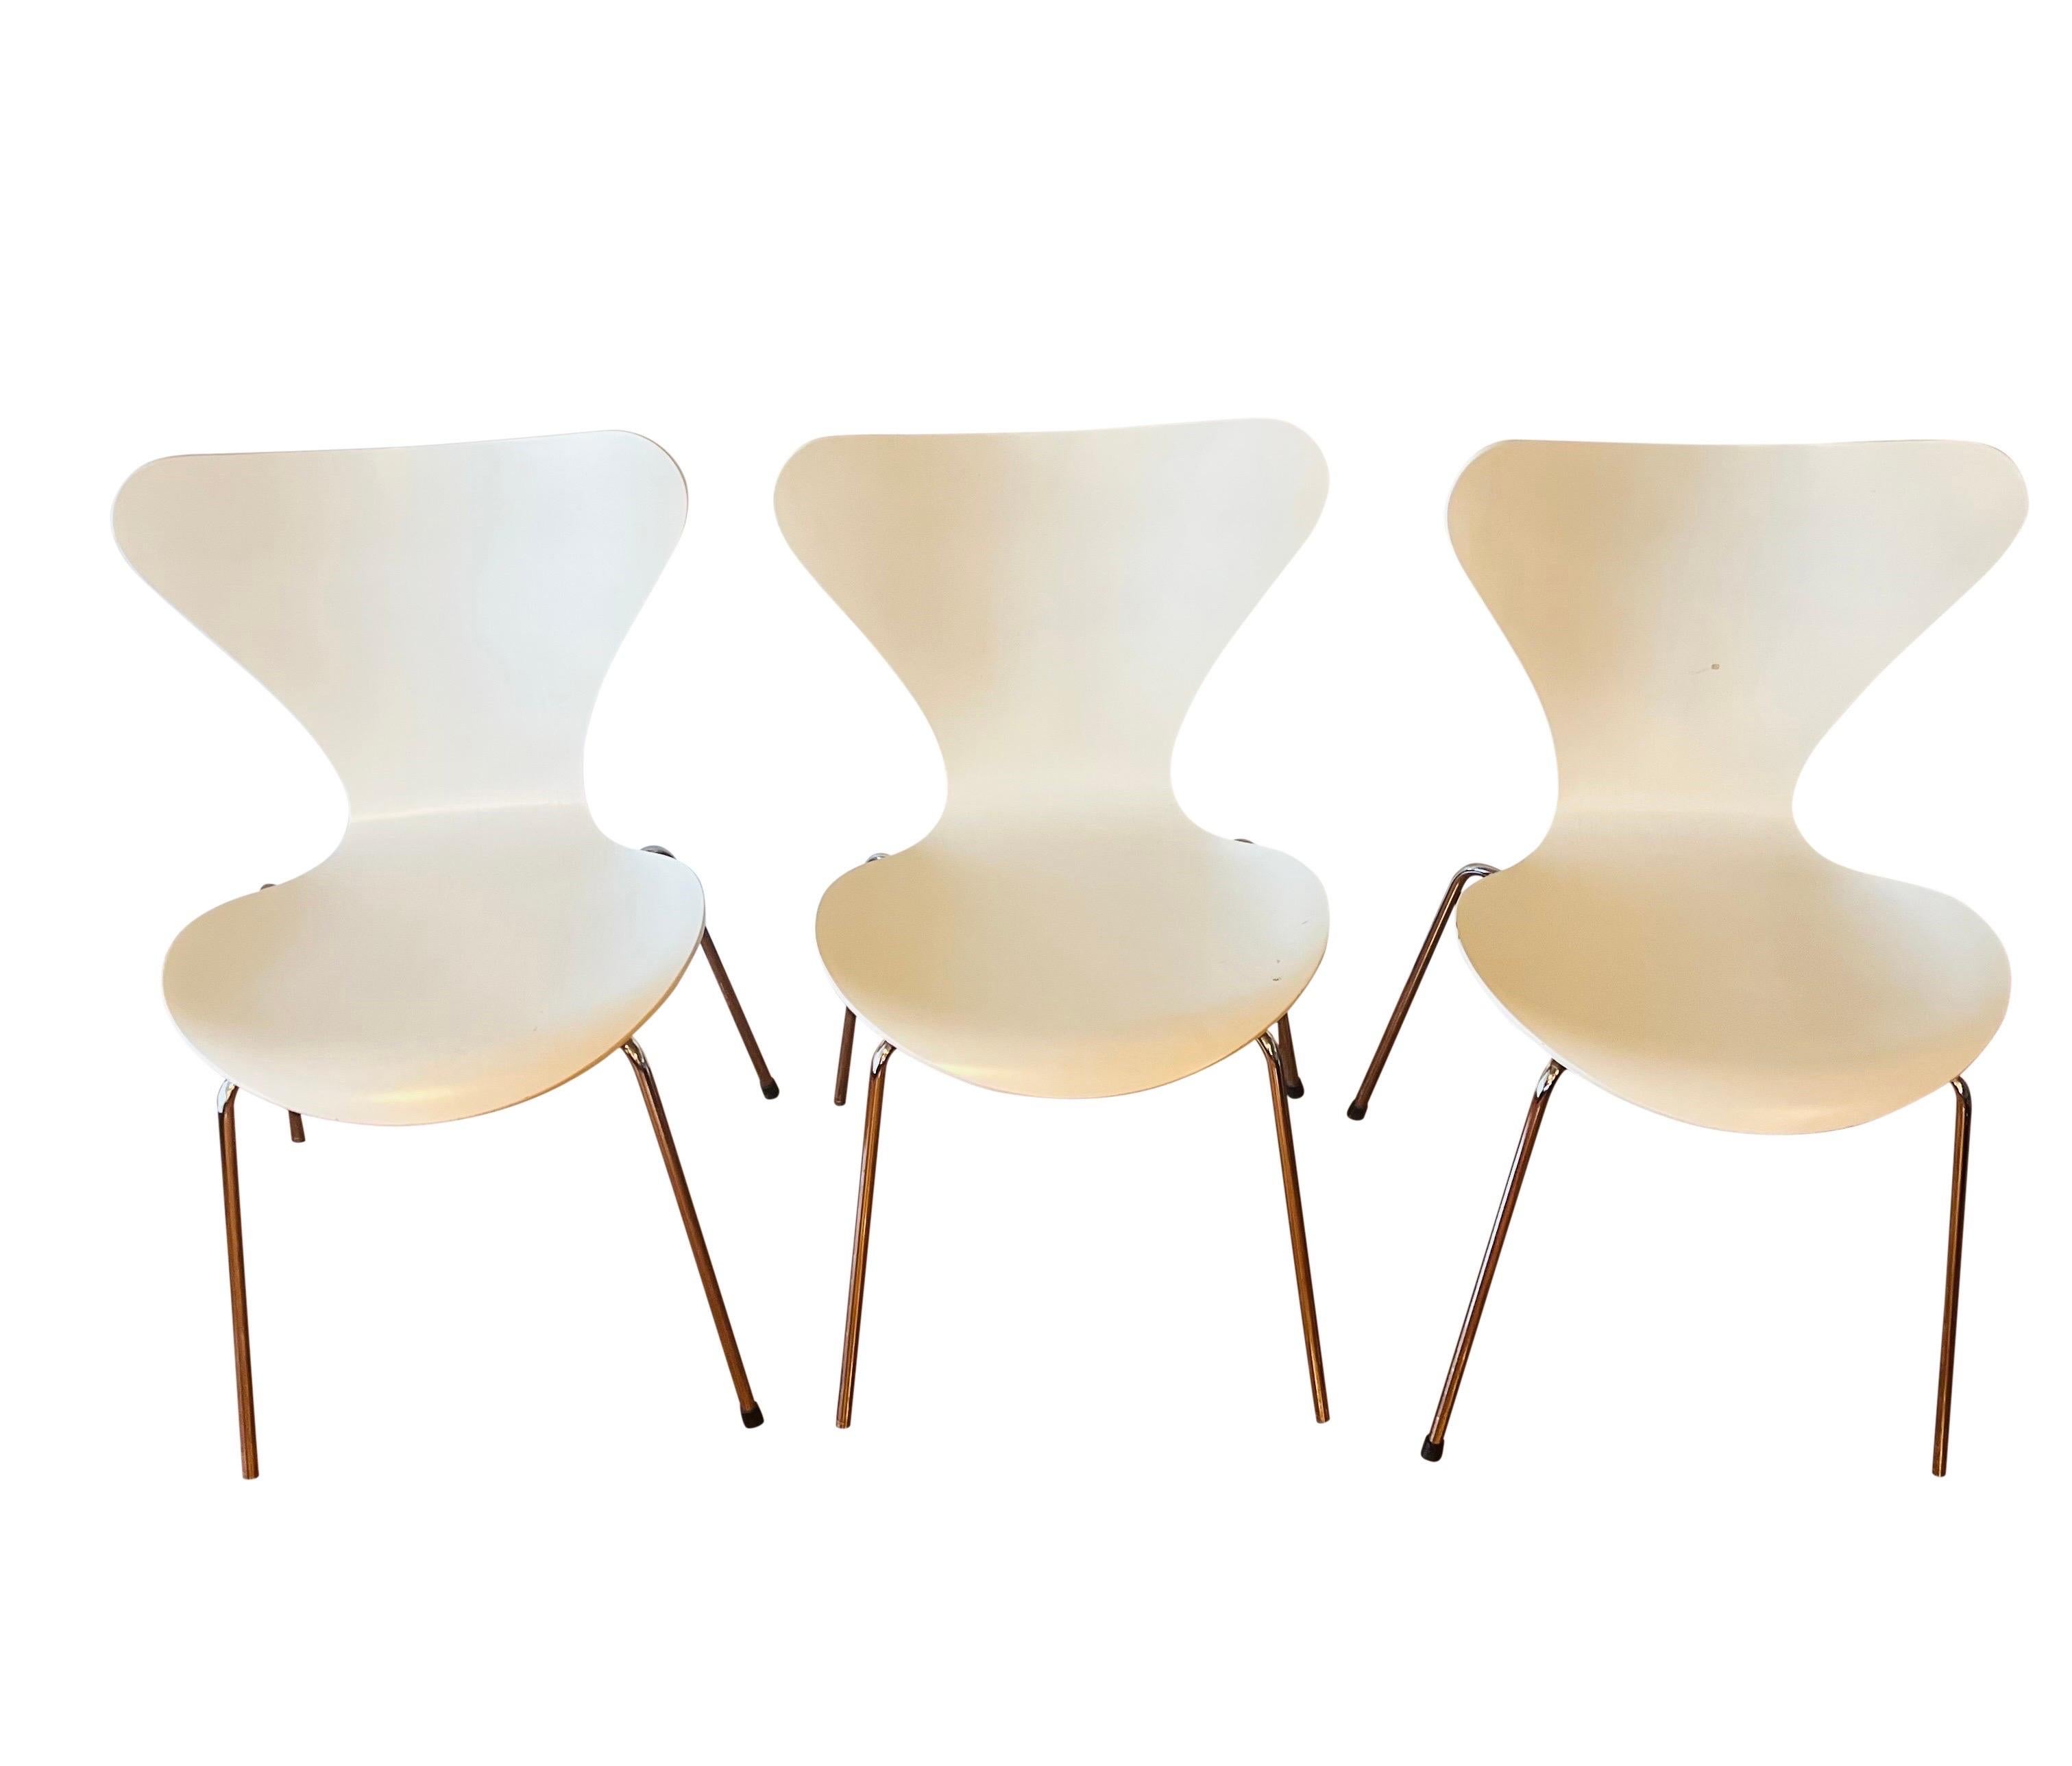 Arne Jacobsen for Fritz Hansen Series 7 Chairs in White, Set of 4 1